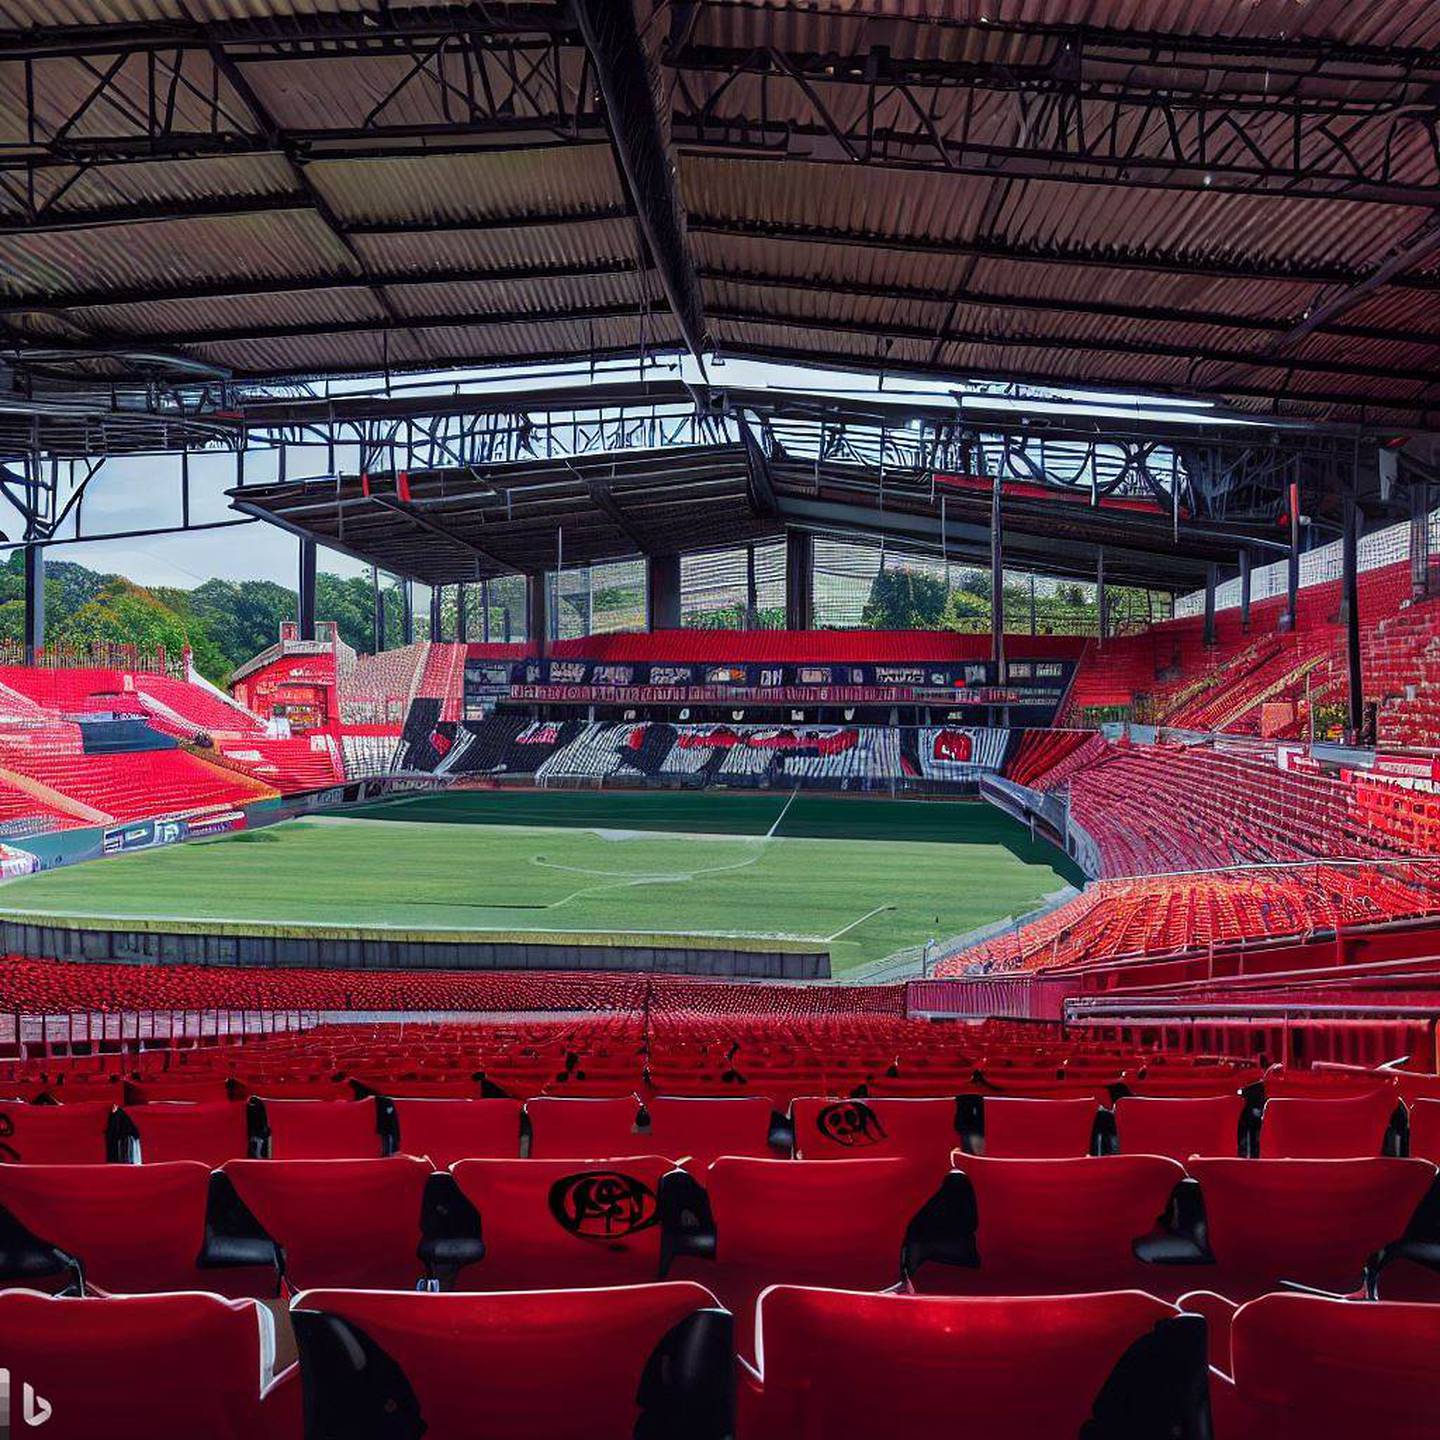 Estadio de Alajuelense en el año 2073 según Bing Image Creator | El Financiero